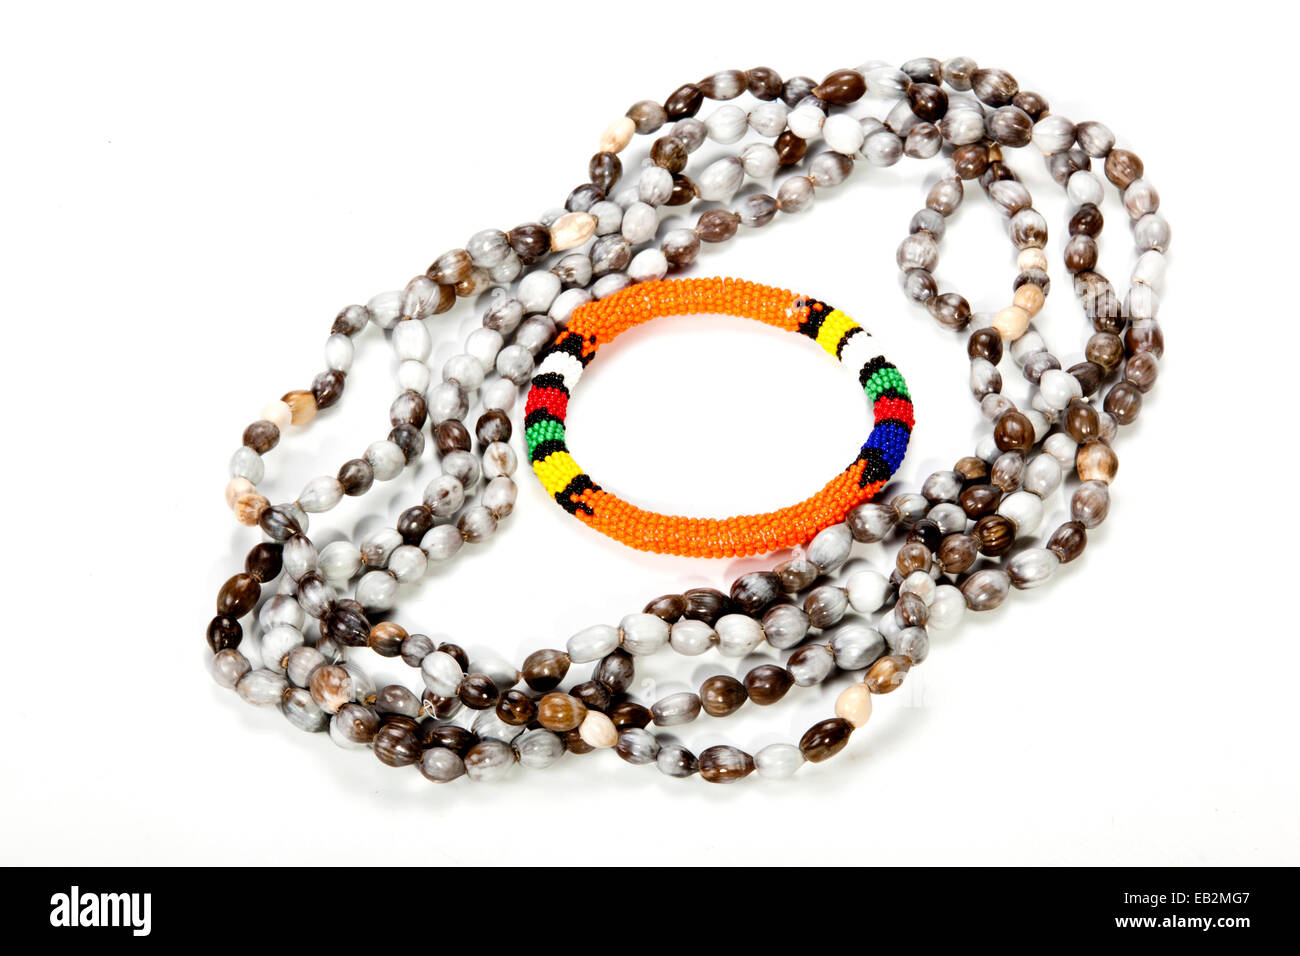 Zulu beaded necklace with bright orange armband Stock Photo